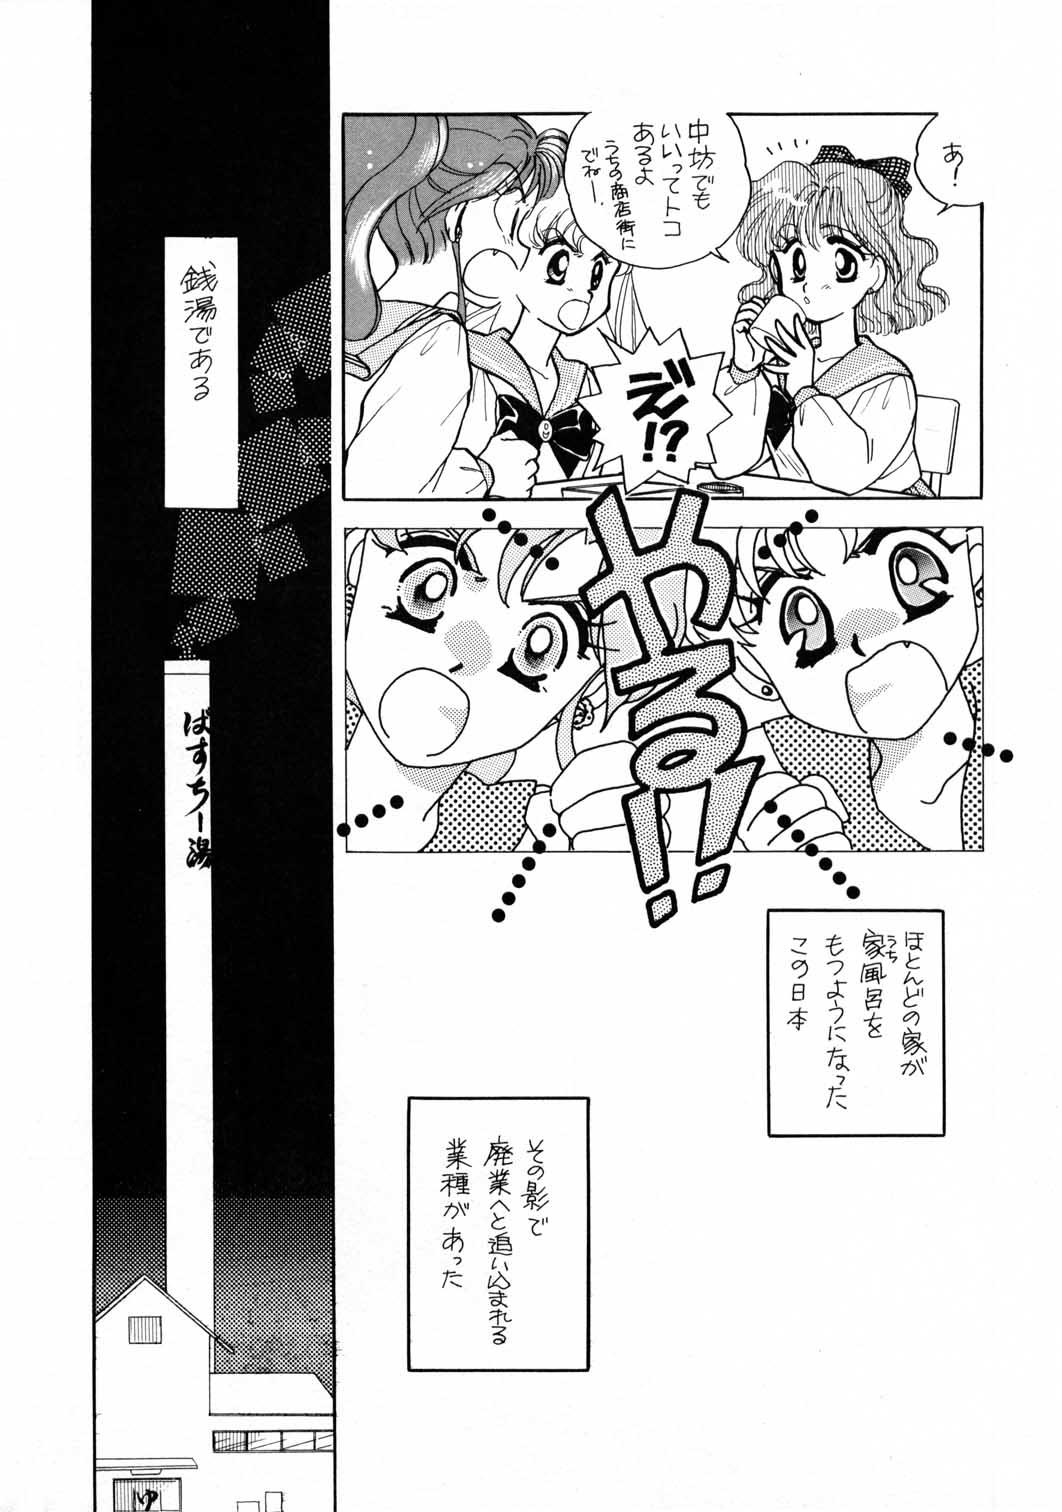 Dick Sucking Sailor Moon JodanJanaiyo - Sailor moon Pigtails - Page 7